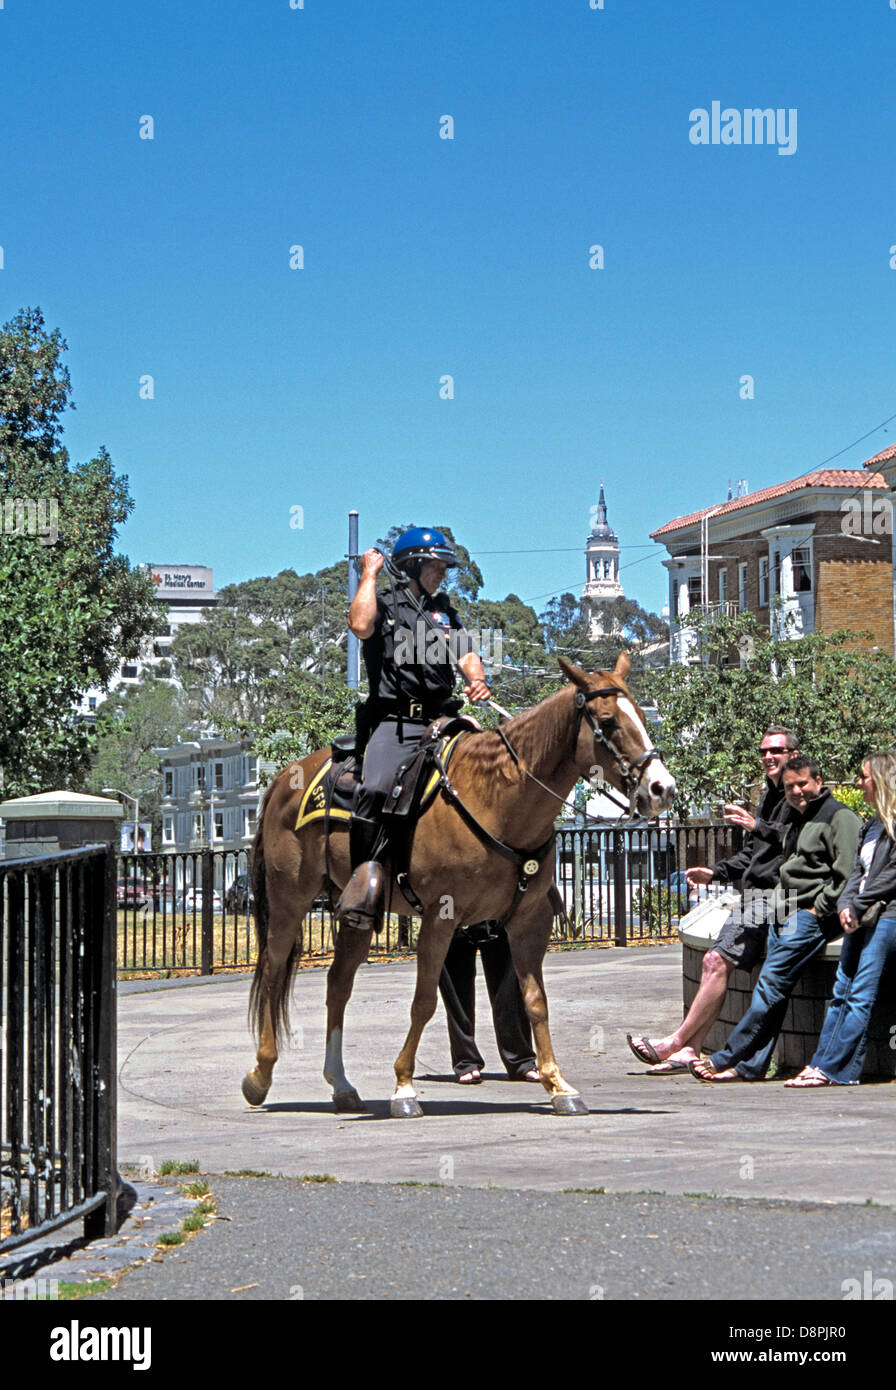 Patrulla de la policía montada de San Francisco entrada al Parque Golden Gate en el borde del Haight a caballo Foto de stock